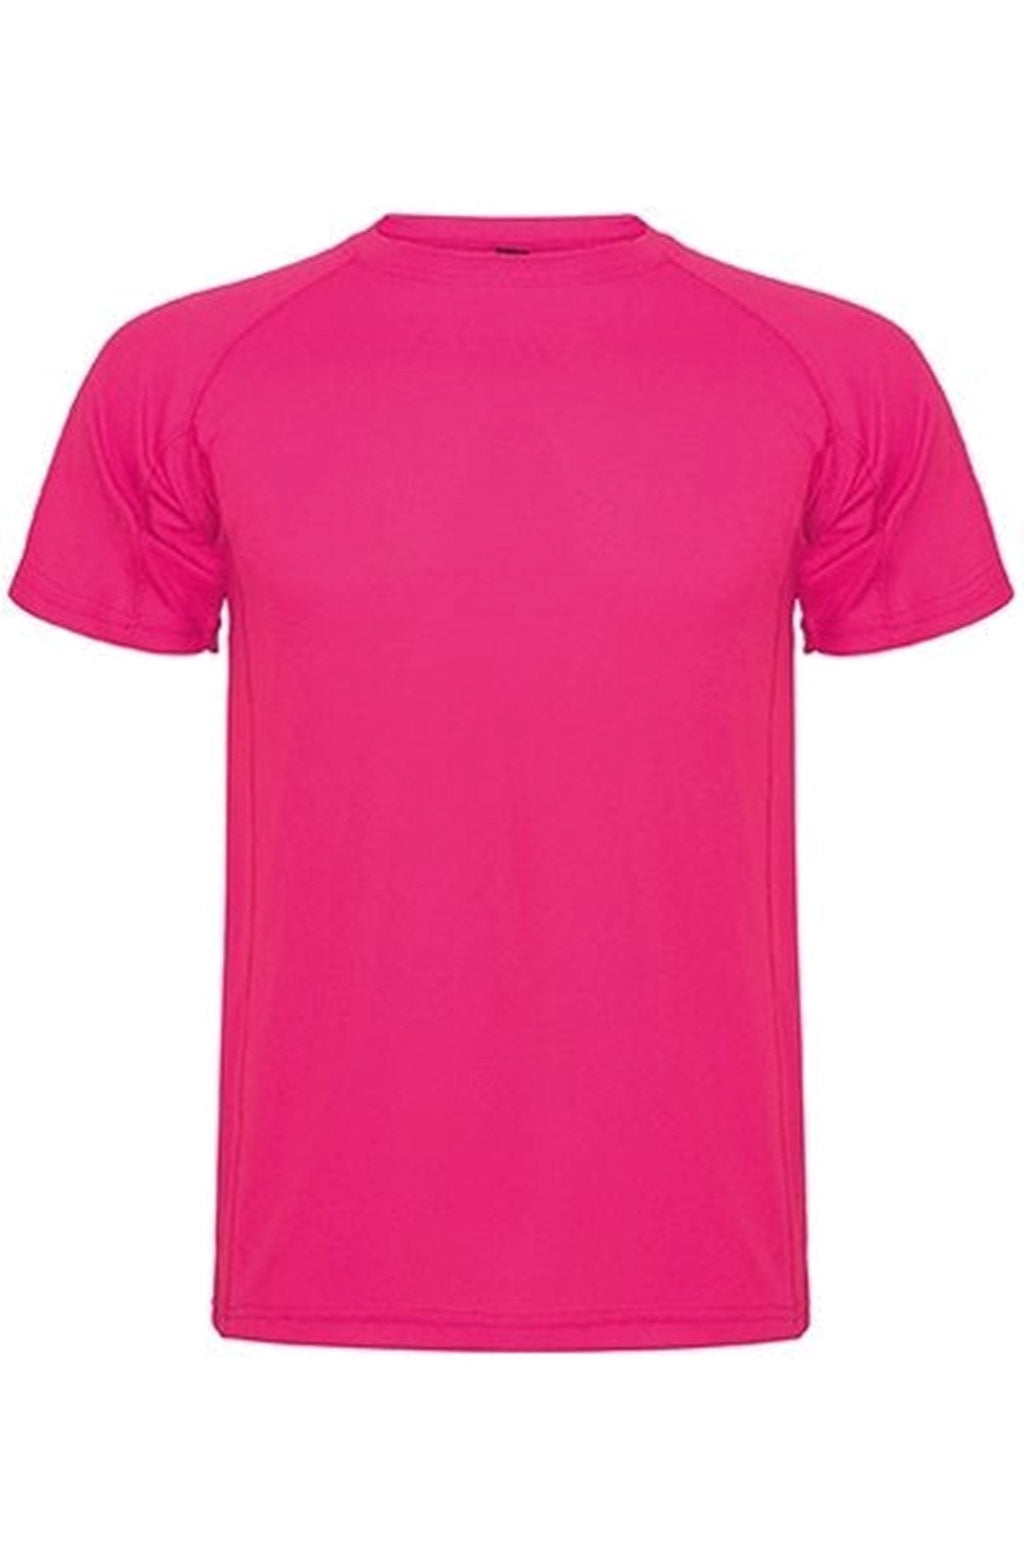 Harjoittelu T -paita - vaaleanpunainen